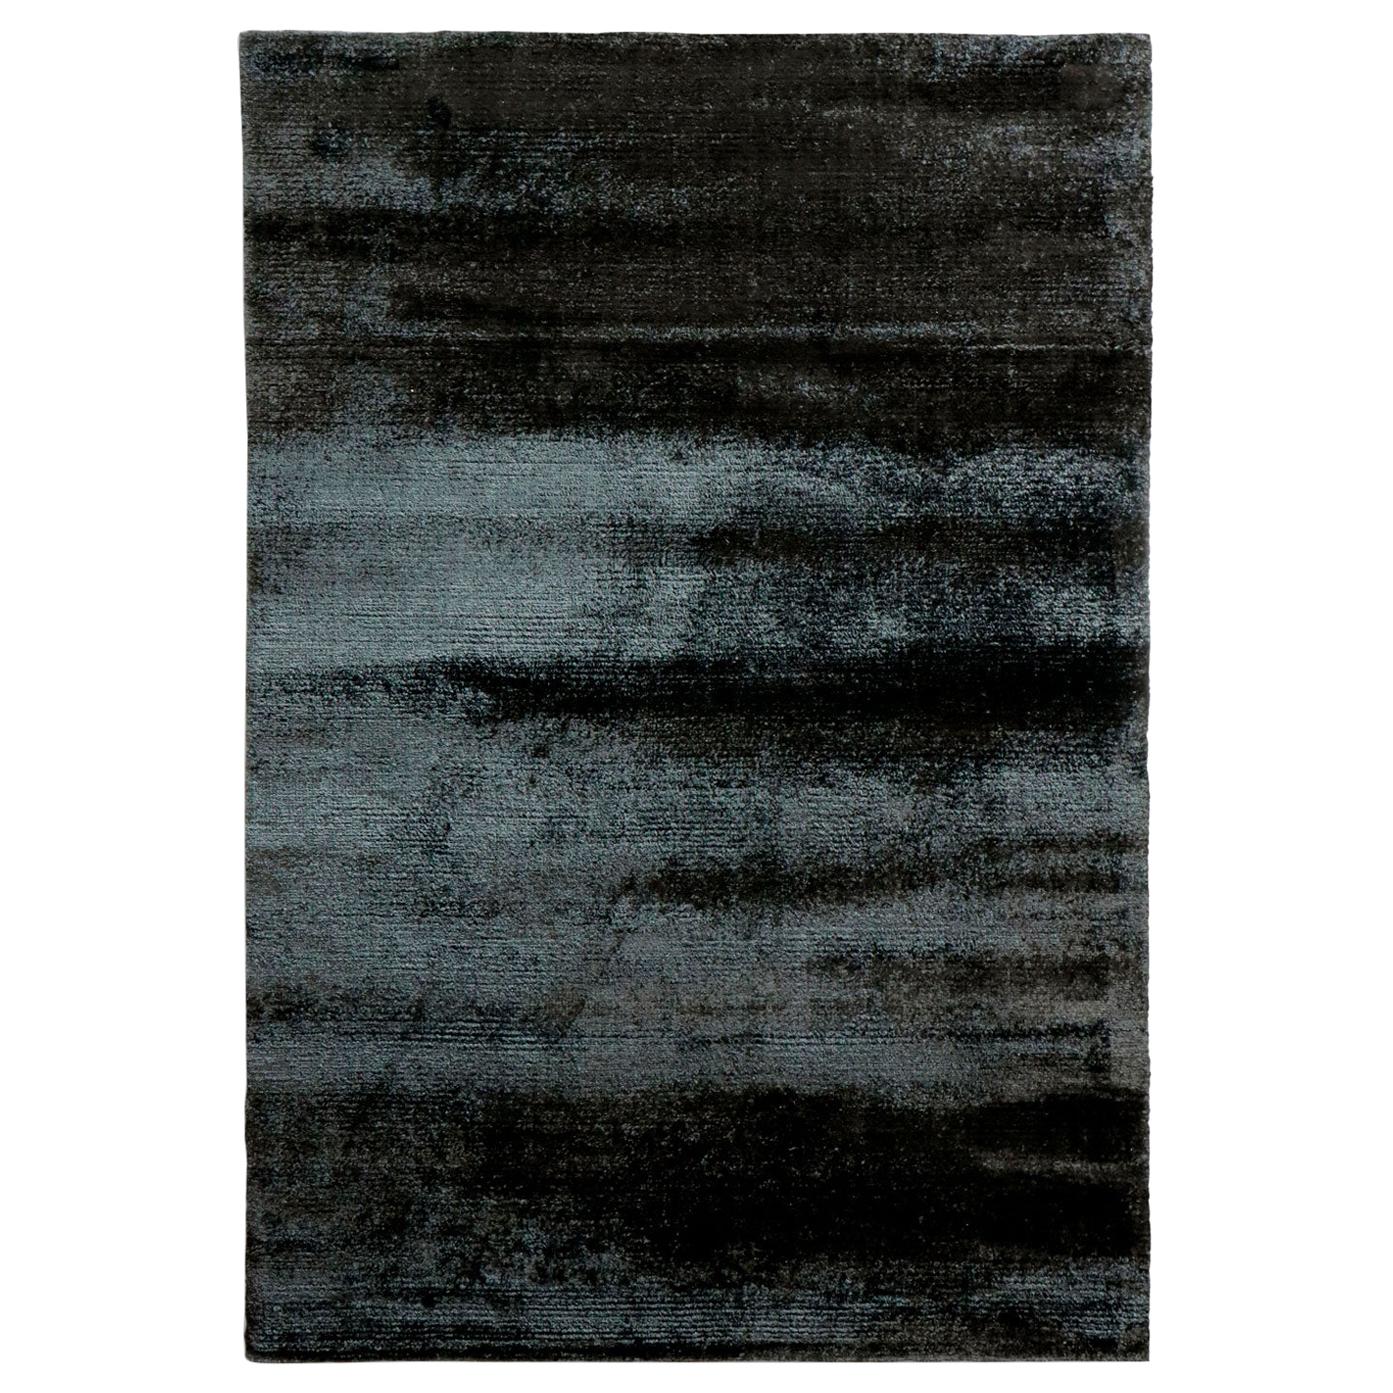 Zeitgenössischer glänzender schwarzer Viskose-Teppich von Deanna Comelllini, auf Lager 200x300 cm